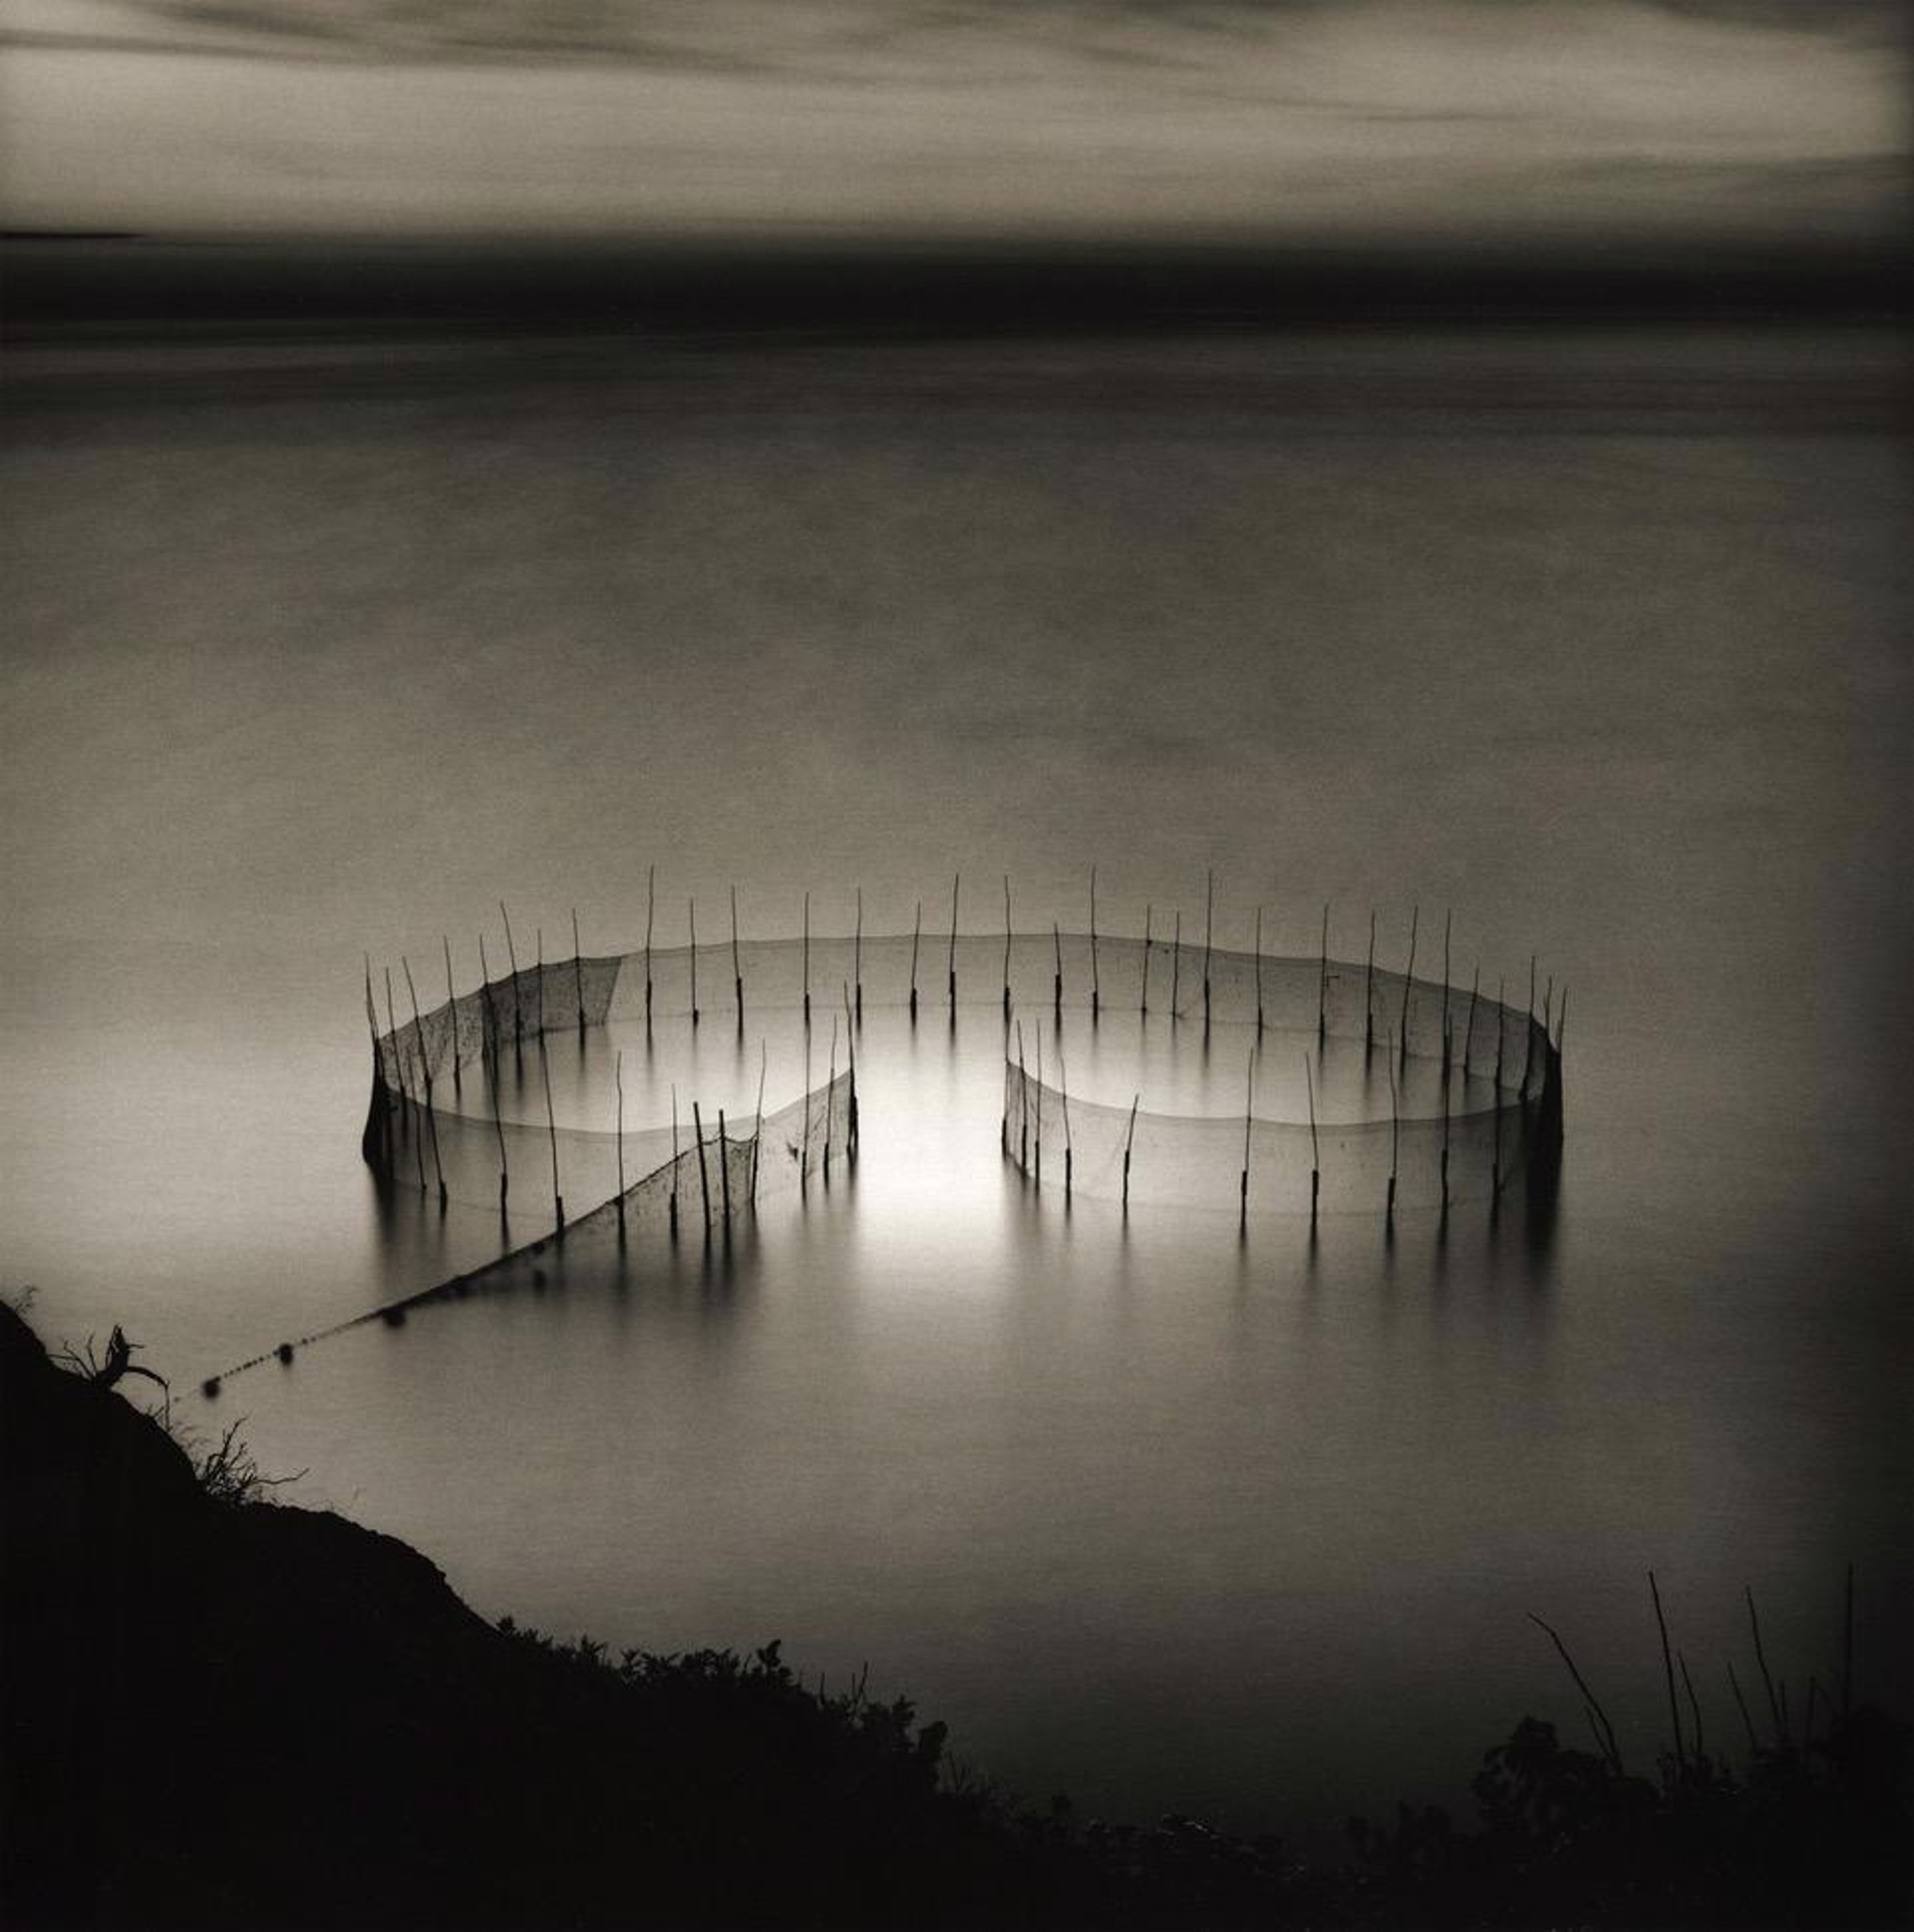 Fishing Weir, XXII, The Intruder by Lisa Tyson Ennis